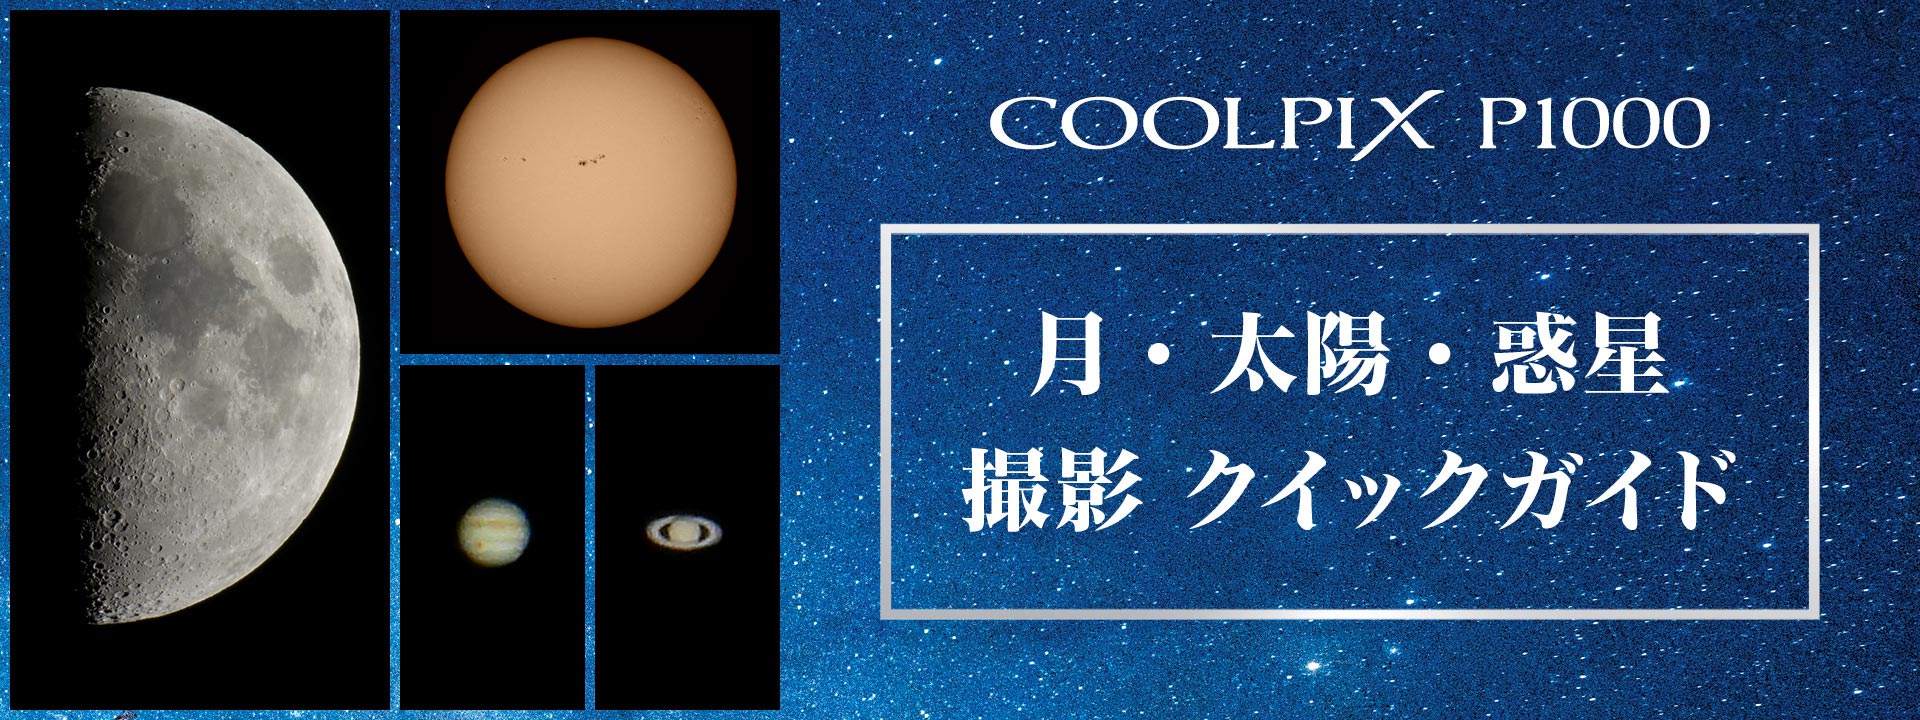 スペシャルコンテンツ「COOLPIX P1000 月・惑星撮影クイックガイド」